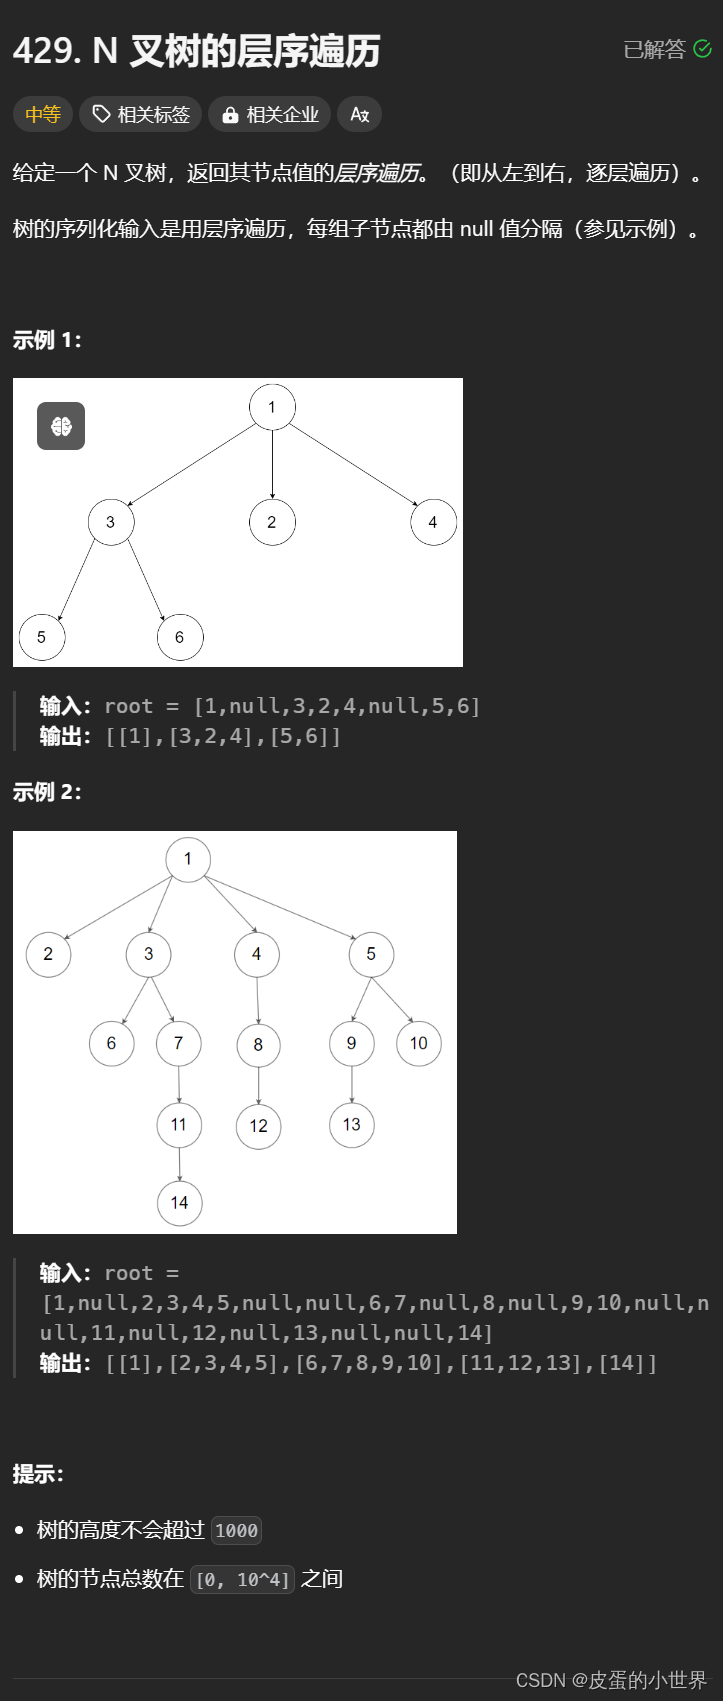 【二叉树】Leetcode N 叉树的层序遍历